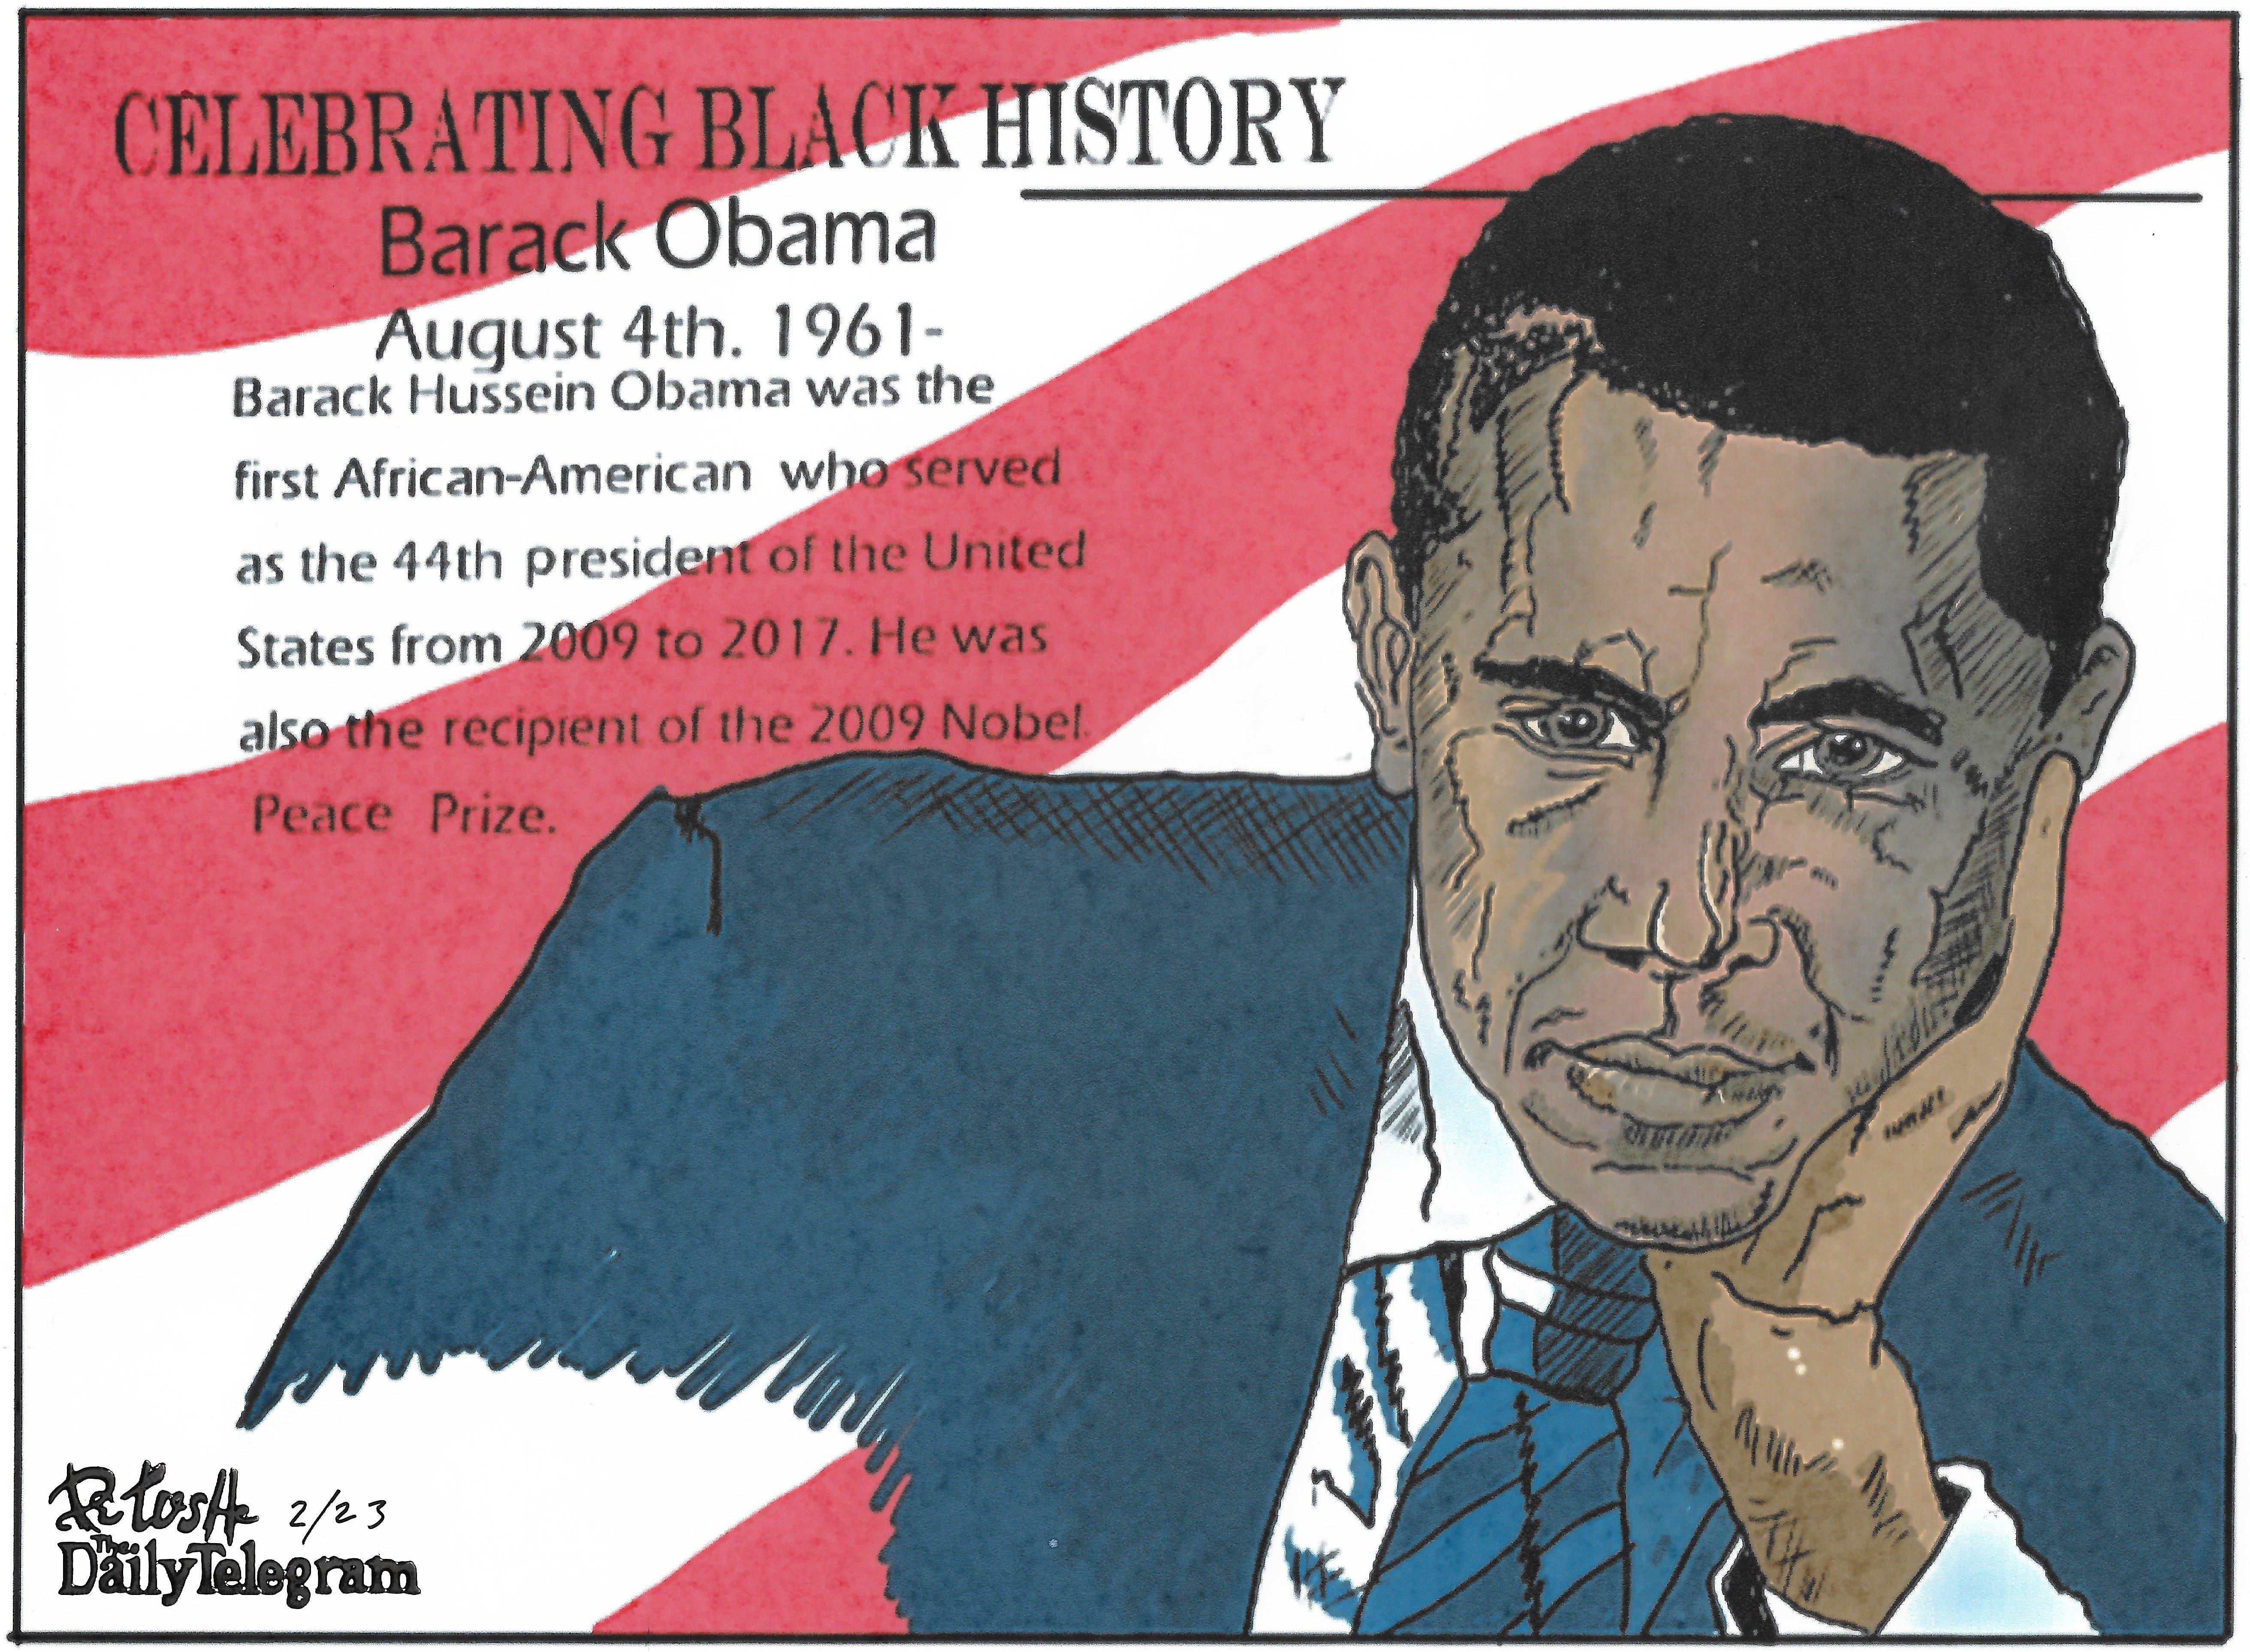 Bruce Petush: Celebrating Black history: Barack Obama